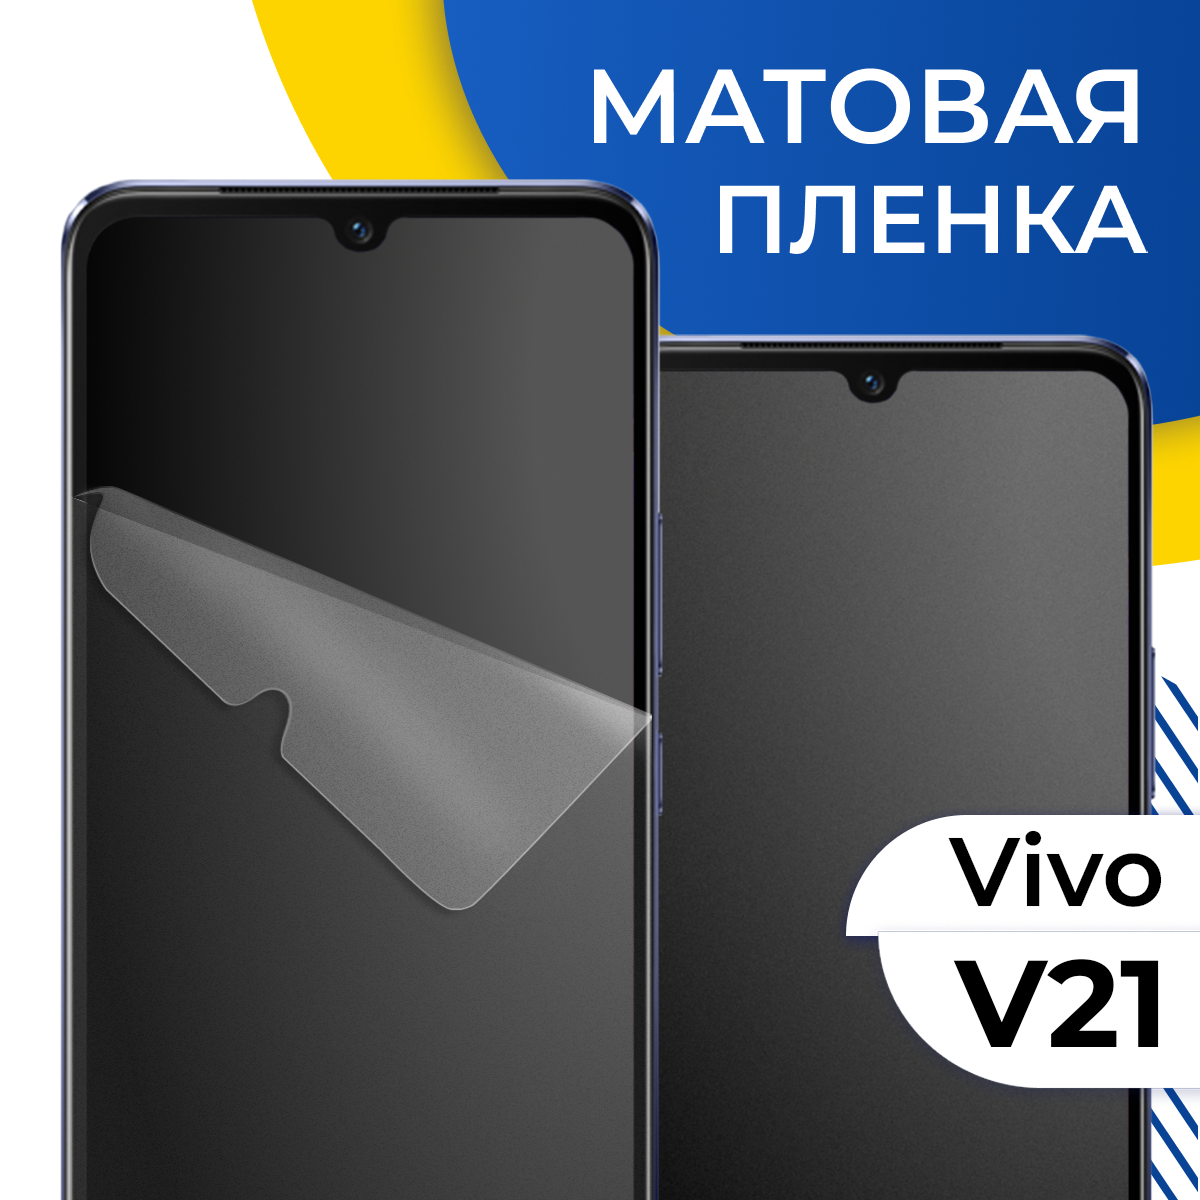 Комплект 2 шт. Матовая гидрогелевая пленка для телефона Vivo V21 / Самовосстанавливающаяся защитная пленка на смартфон Виво В21 / Противоударная